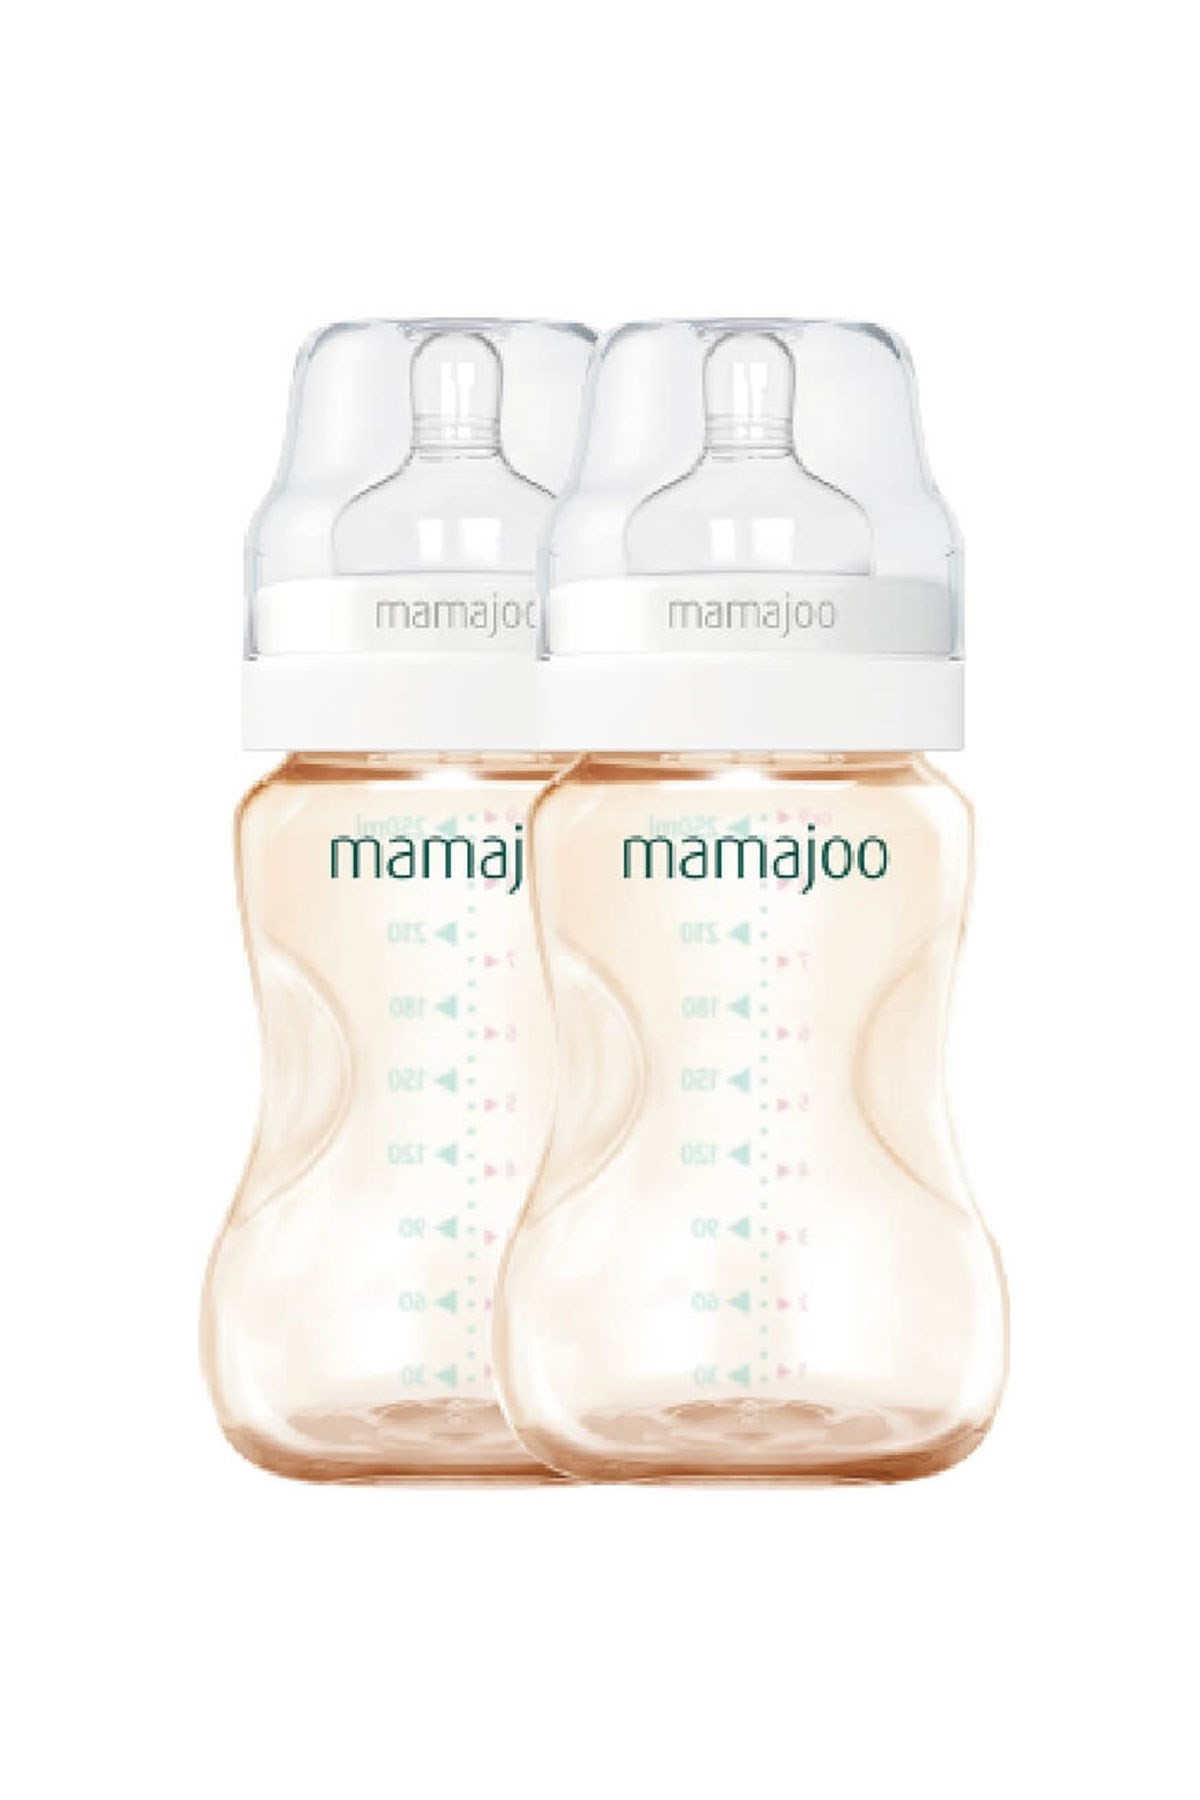 Mamajoo 5 İşlevli Kurutmalı Buhar Sterilizatörü & Mama Isıtıcısı Gold İkili Biberon 250ml Hediye